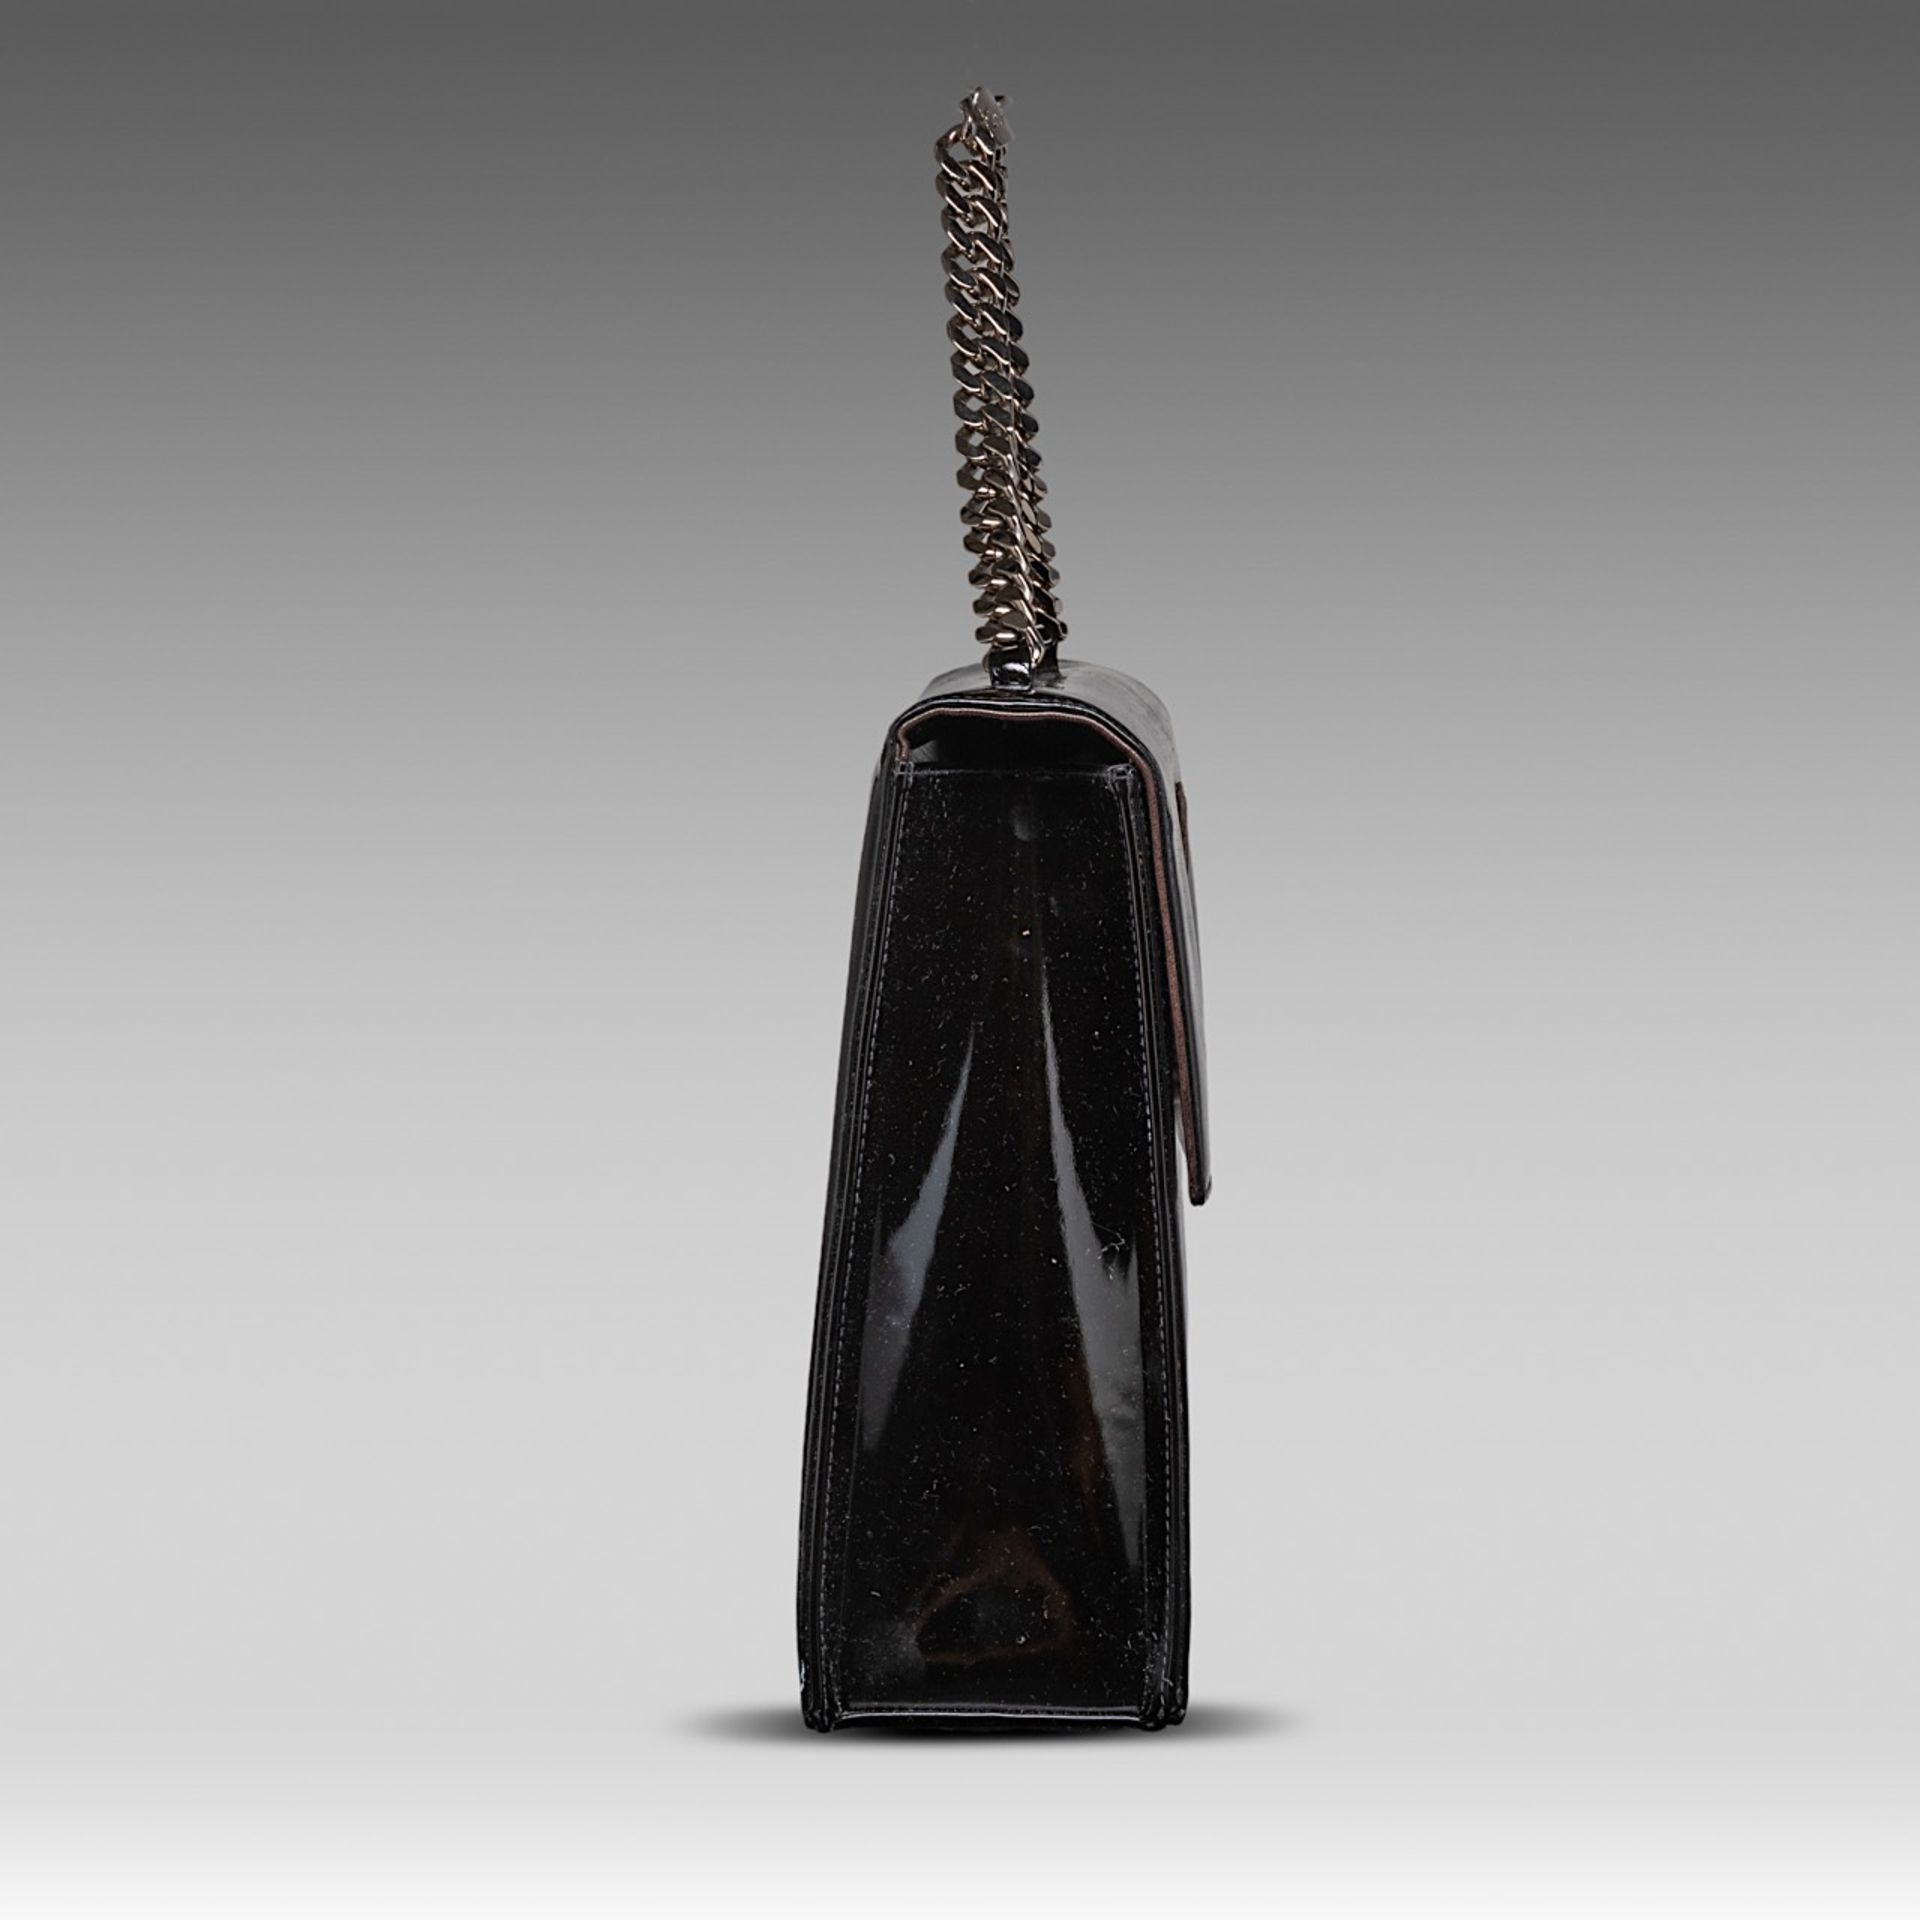 A Chanel flap handbag in black patent leather, H 22 - W 25 - D 8 cm - Bild 3 aus 10